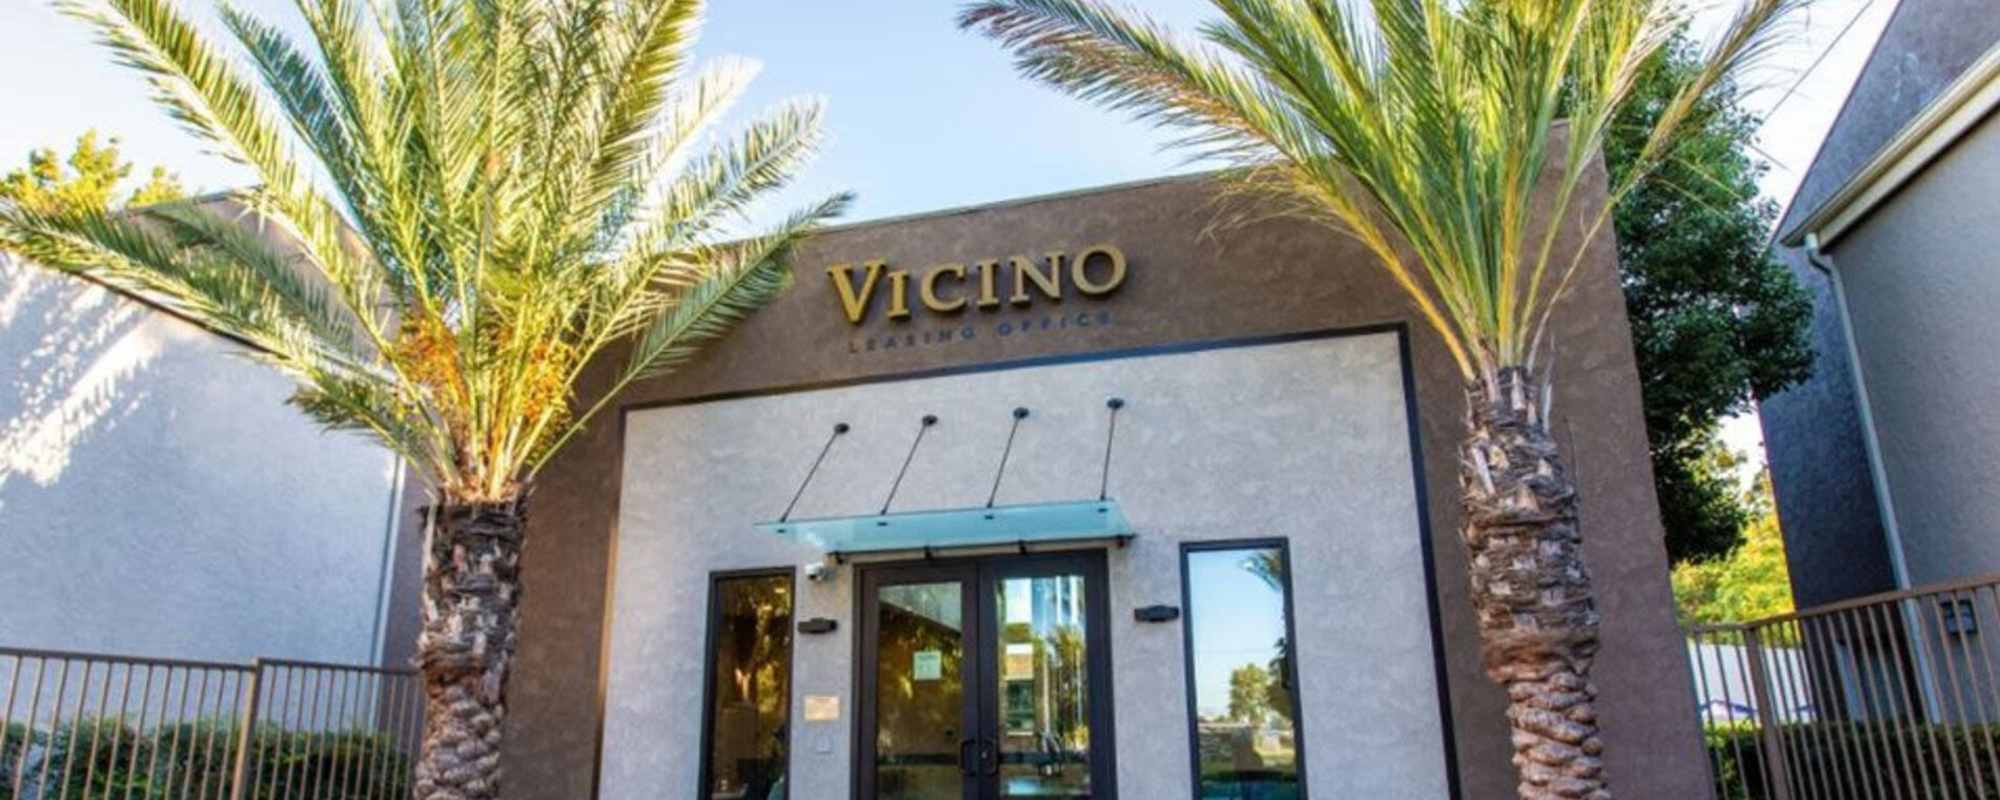 Apartments at Vicino Apartments in Lakewood, California